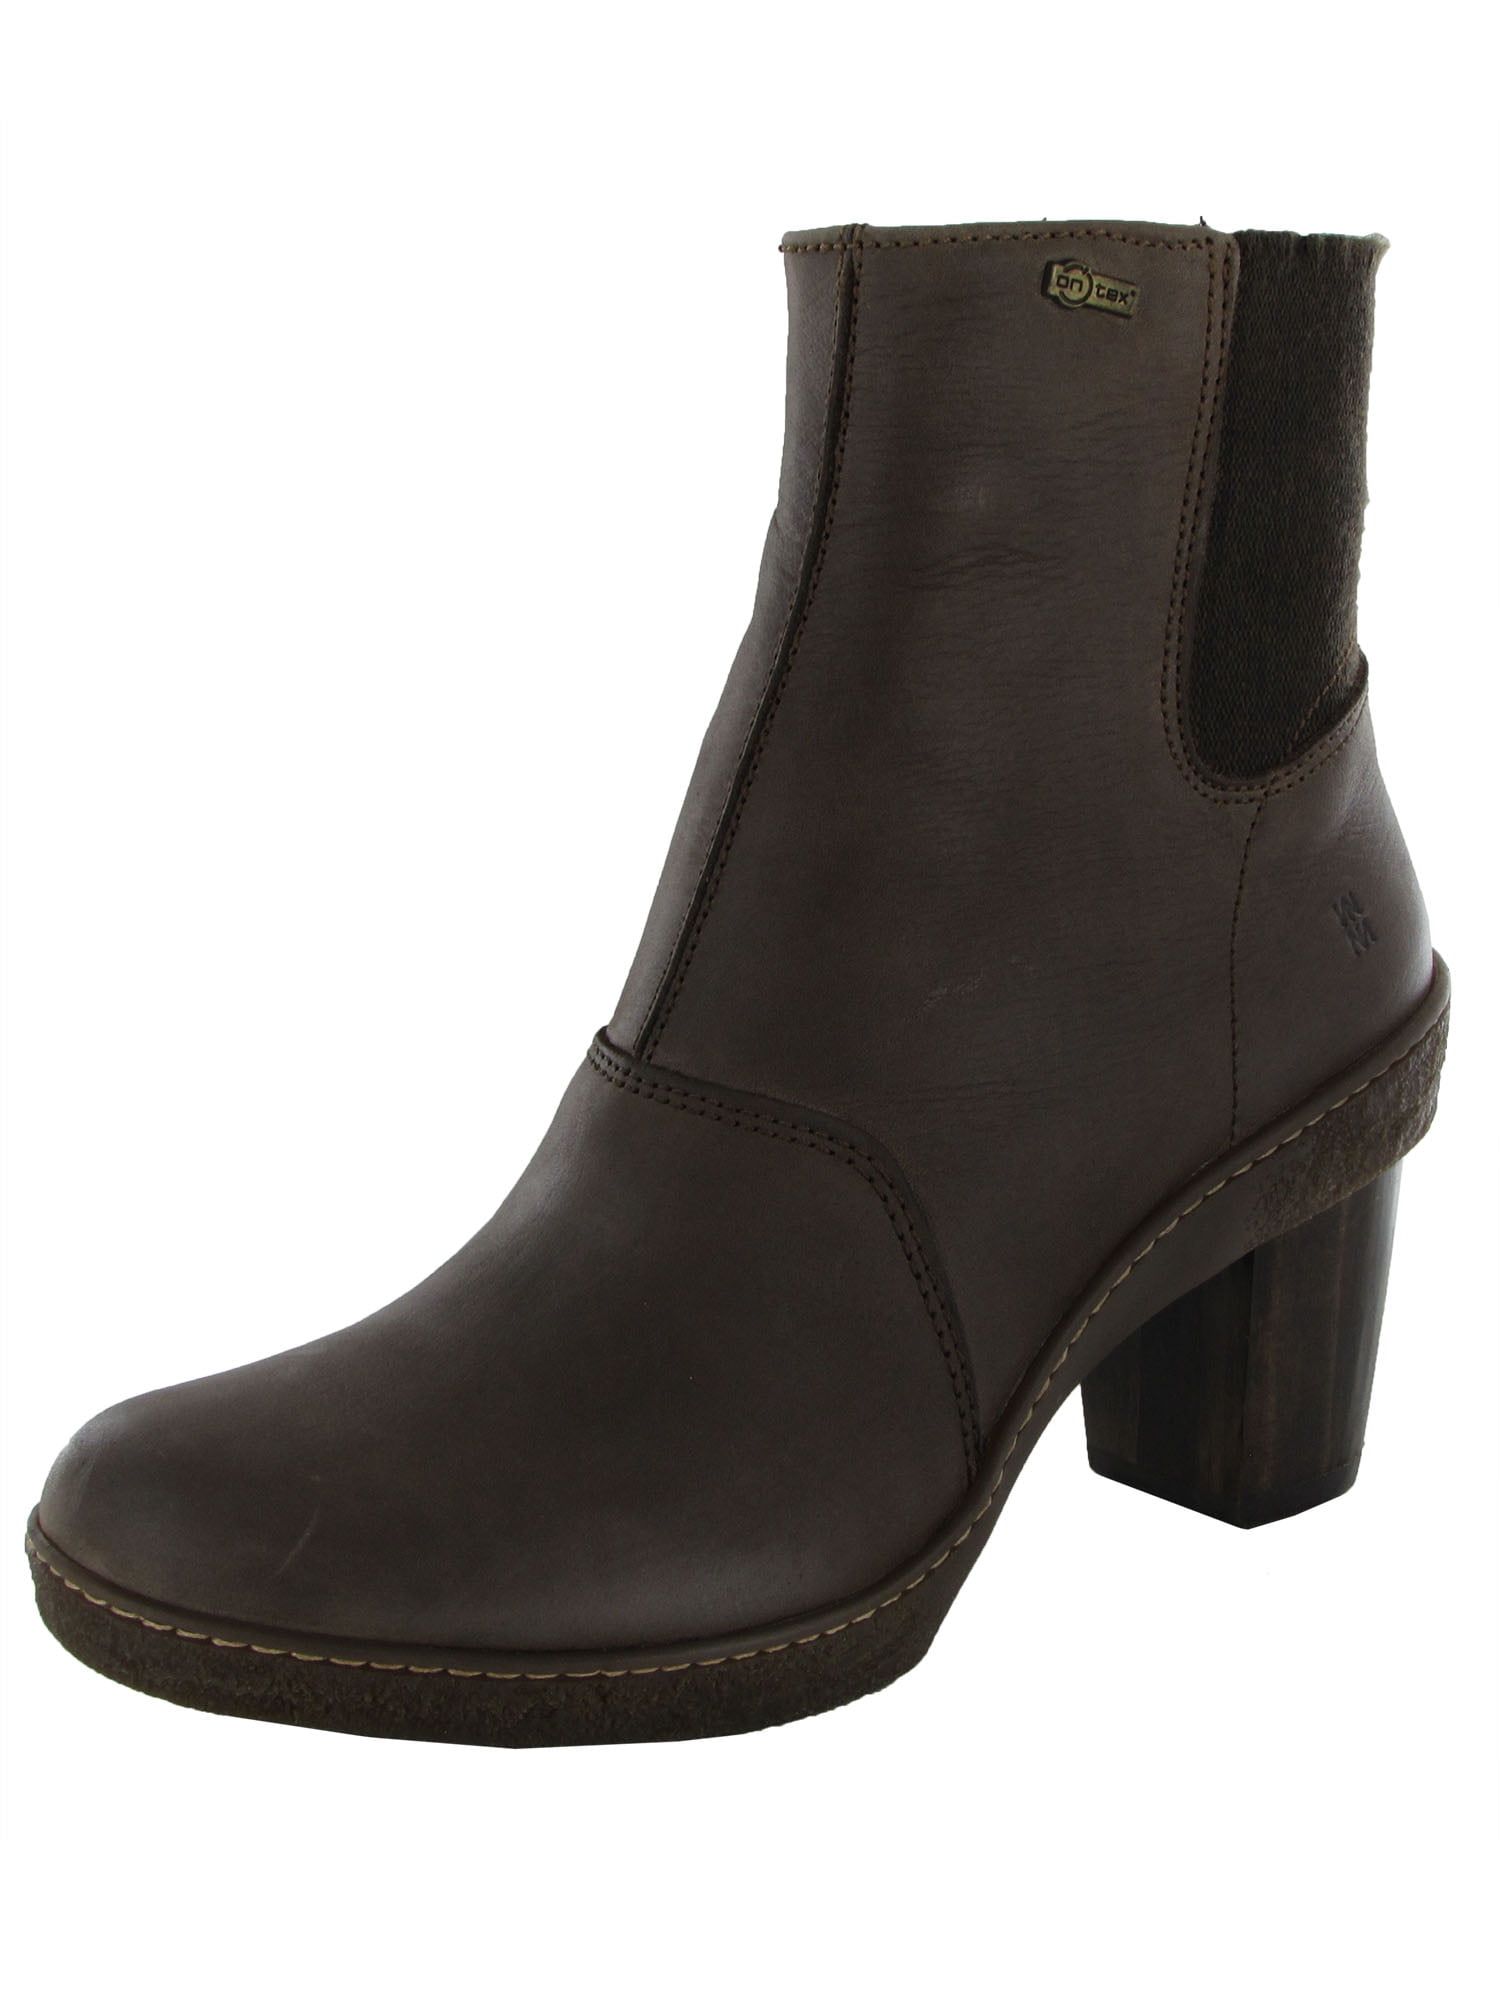 El Naturalista Womens Croche N948 Desert Boot Shoes, Black, EU 39 / US 8.5  